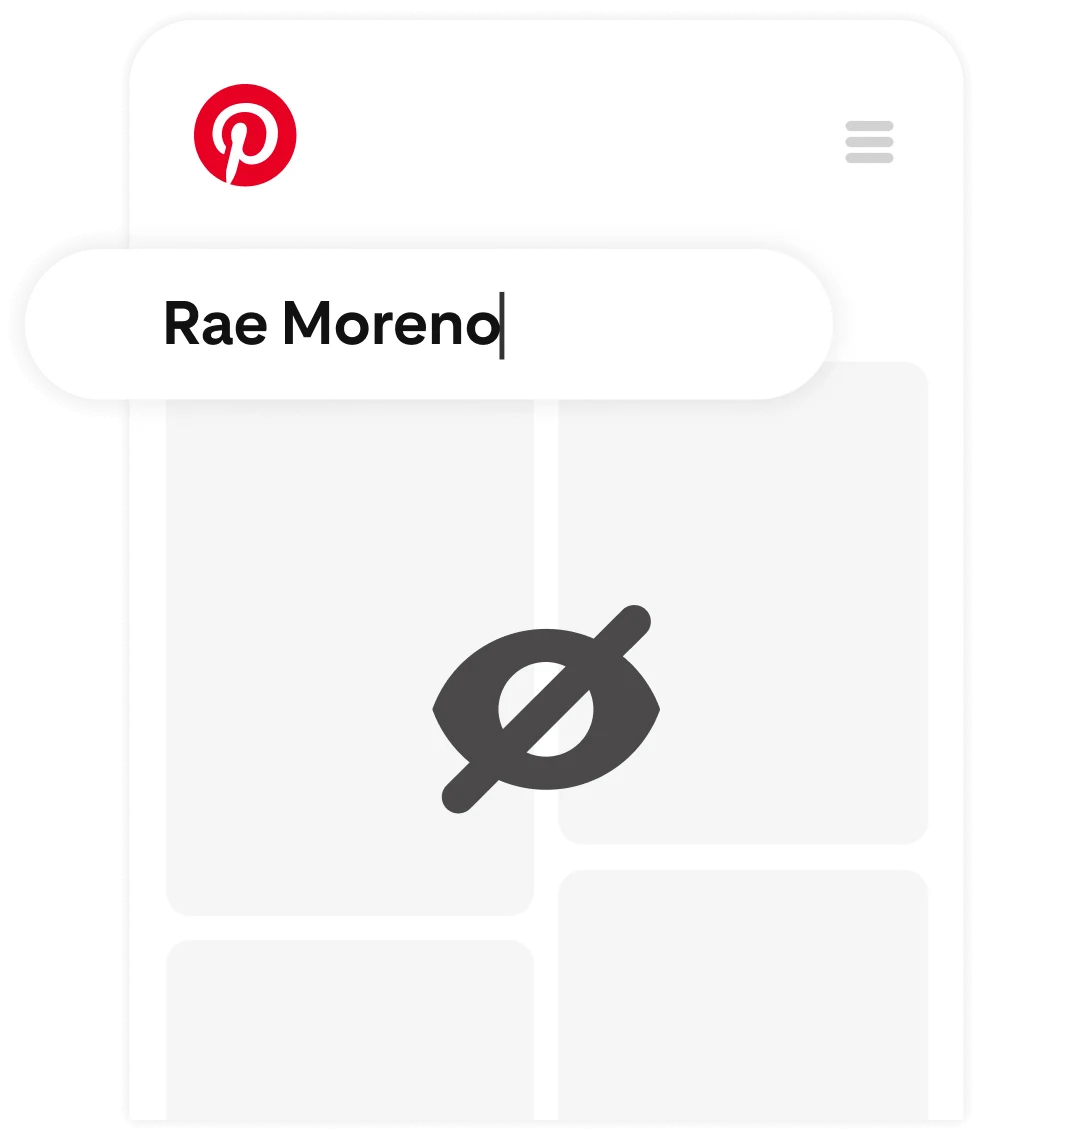 「Rae Moreno」という名前が検索バーに入力されている、プライベート Pinterest フィード